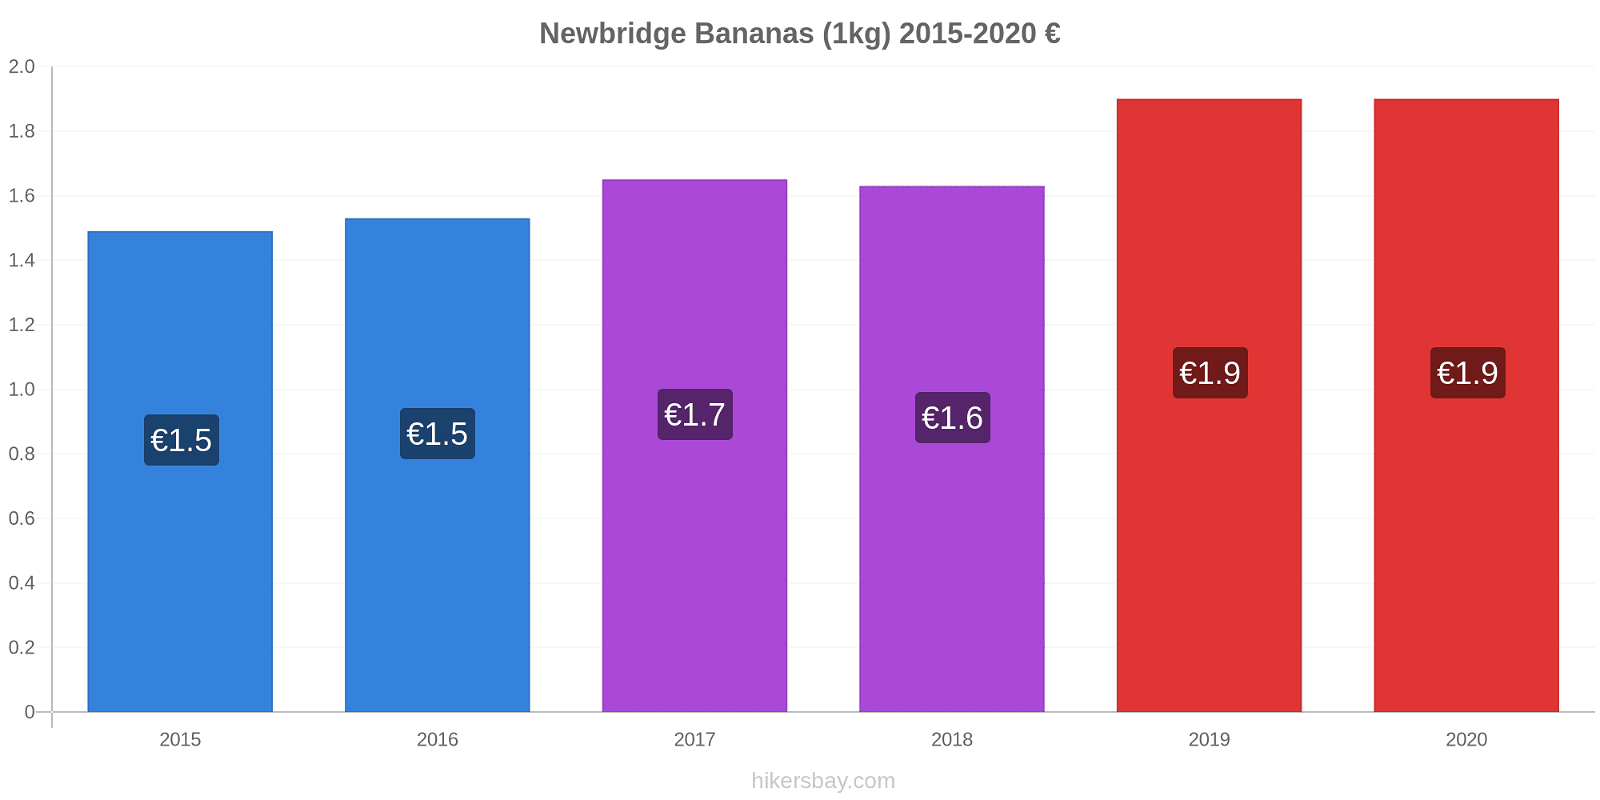 Newbridge variação de preço Banana (1kg) hikersbay.com